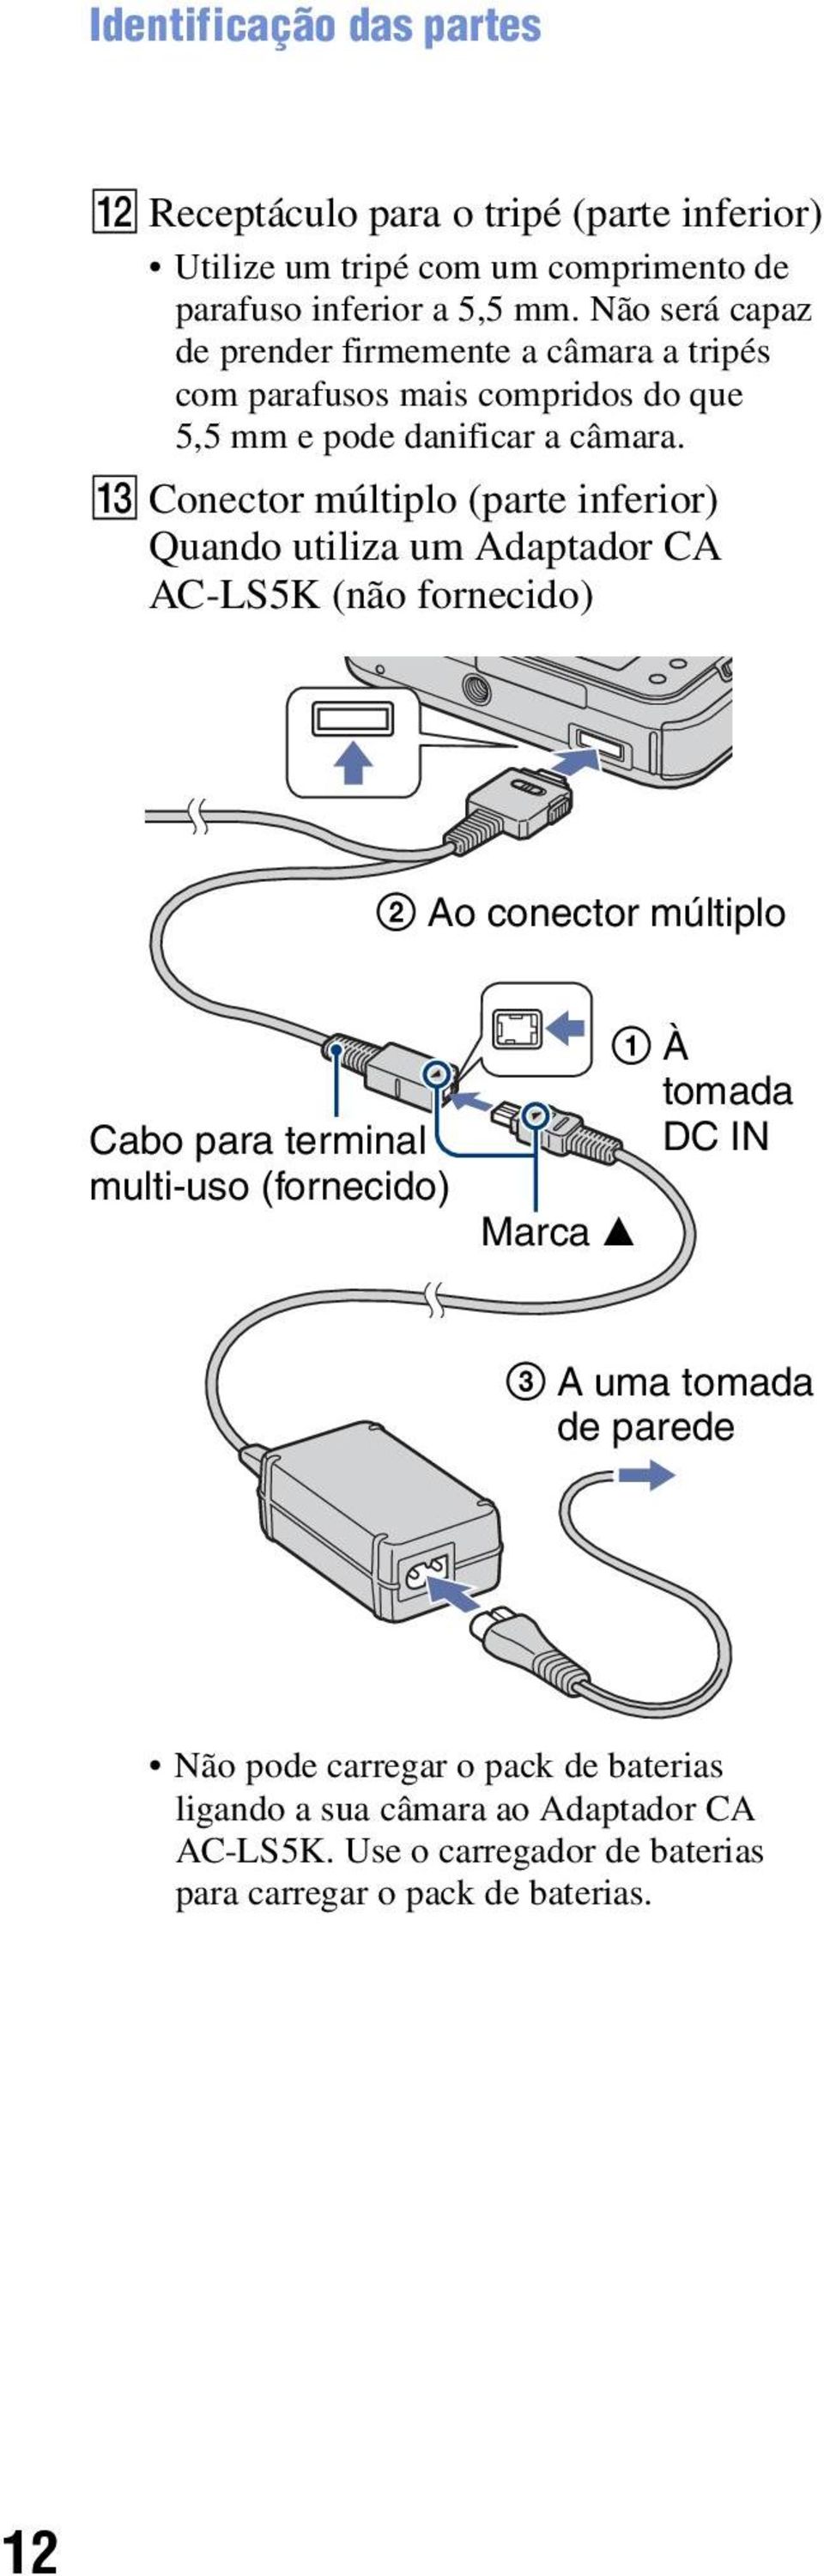 M Conector múltiplo (parte inferior) Quando utiliza um Adaptador CA AC-LS5K (não fornecido) 2 Ao conector múltiplo Cabo para terminal multi-uso